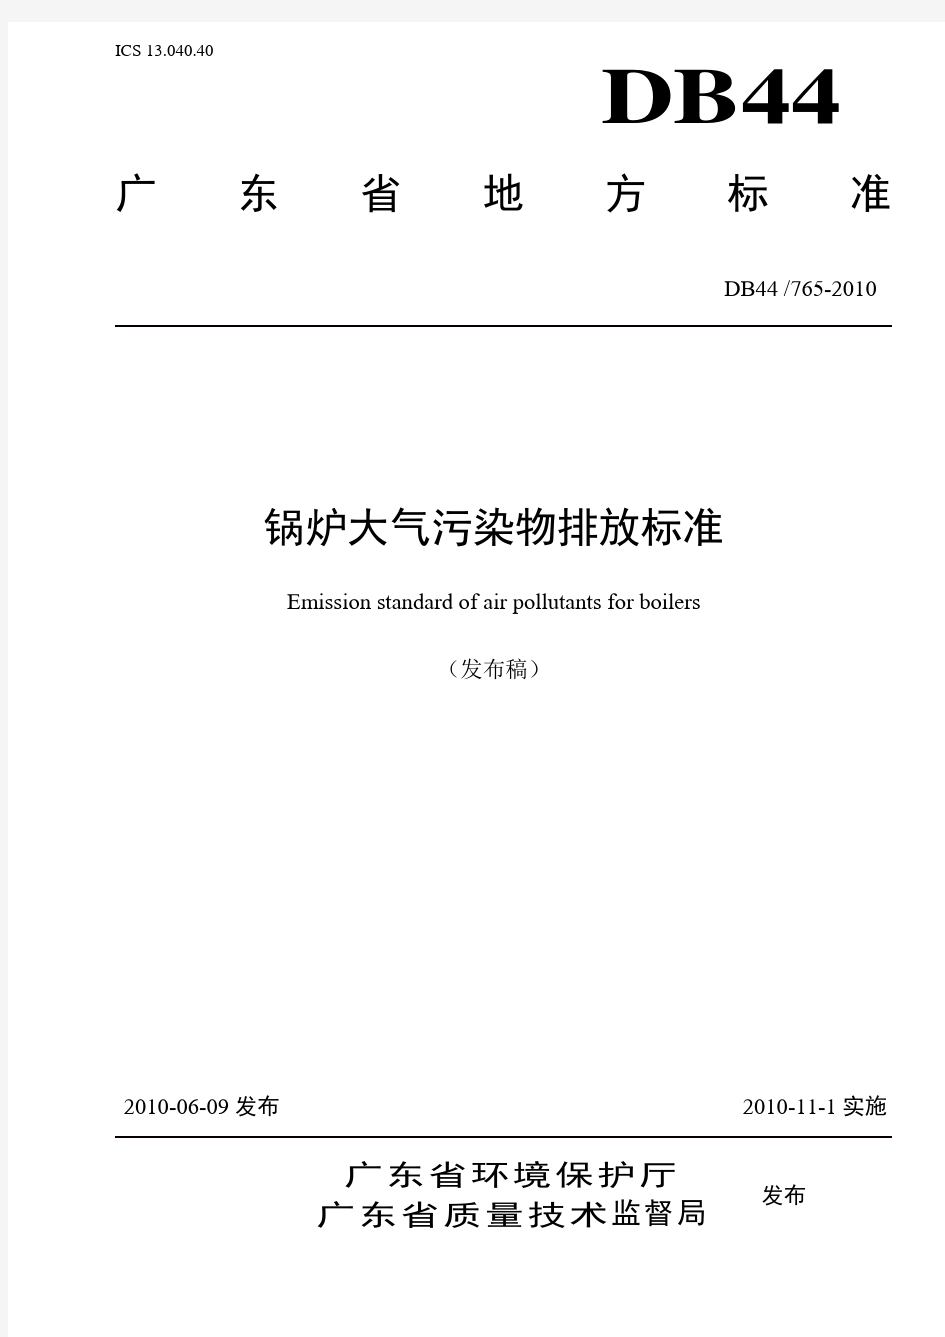 广东省地方标准《锅炉大气污染物排放标准》(DB44765-2010)(DOC)